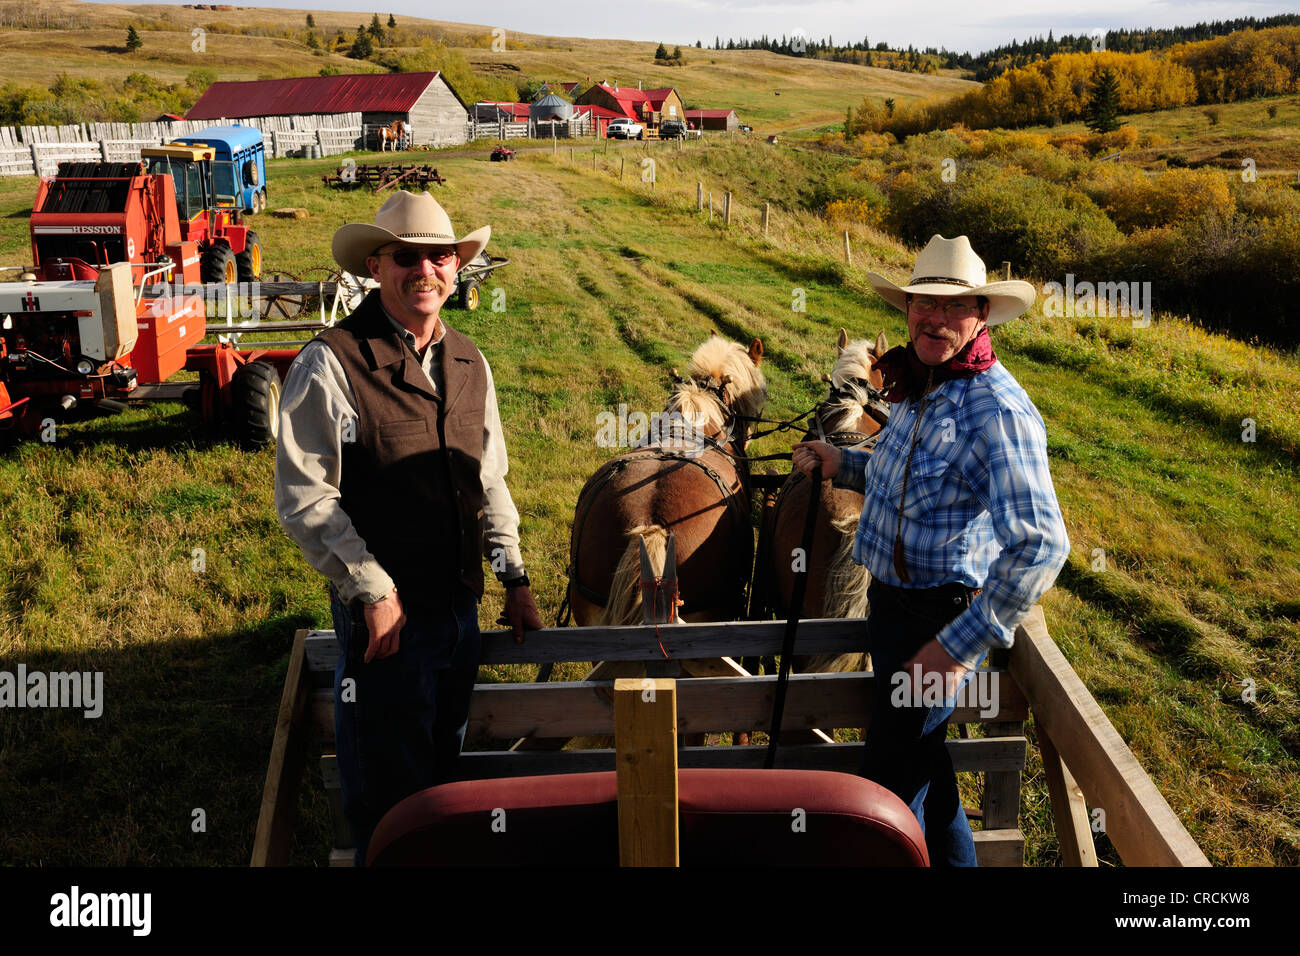 Deux cow-boys dans un cheval panier, Saskatchewan, Canada, Amérique du Nord Banque D'Images